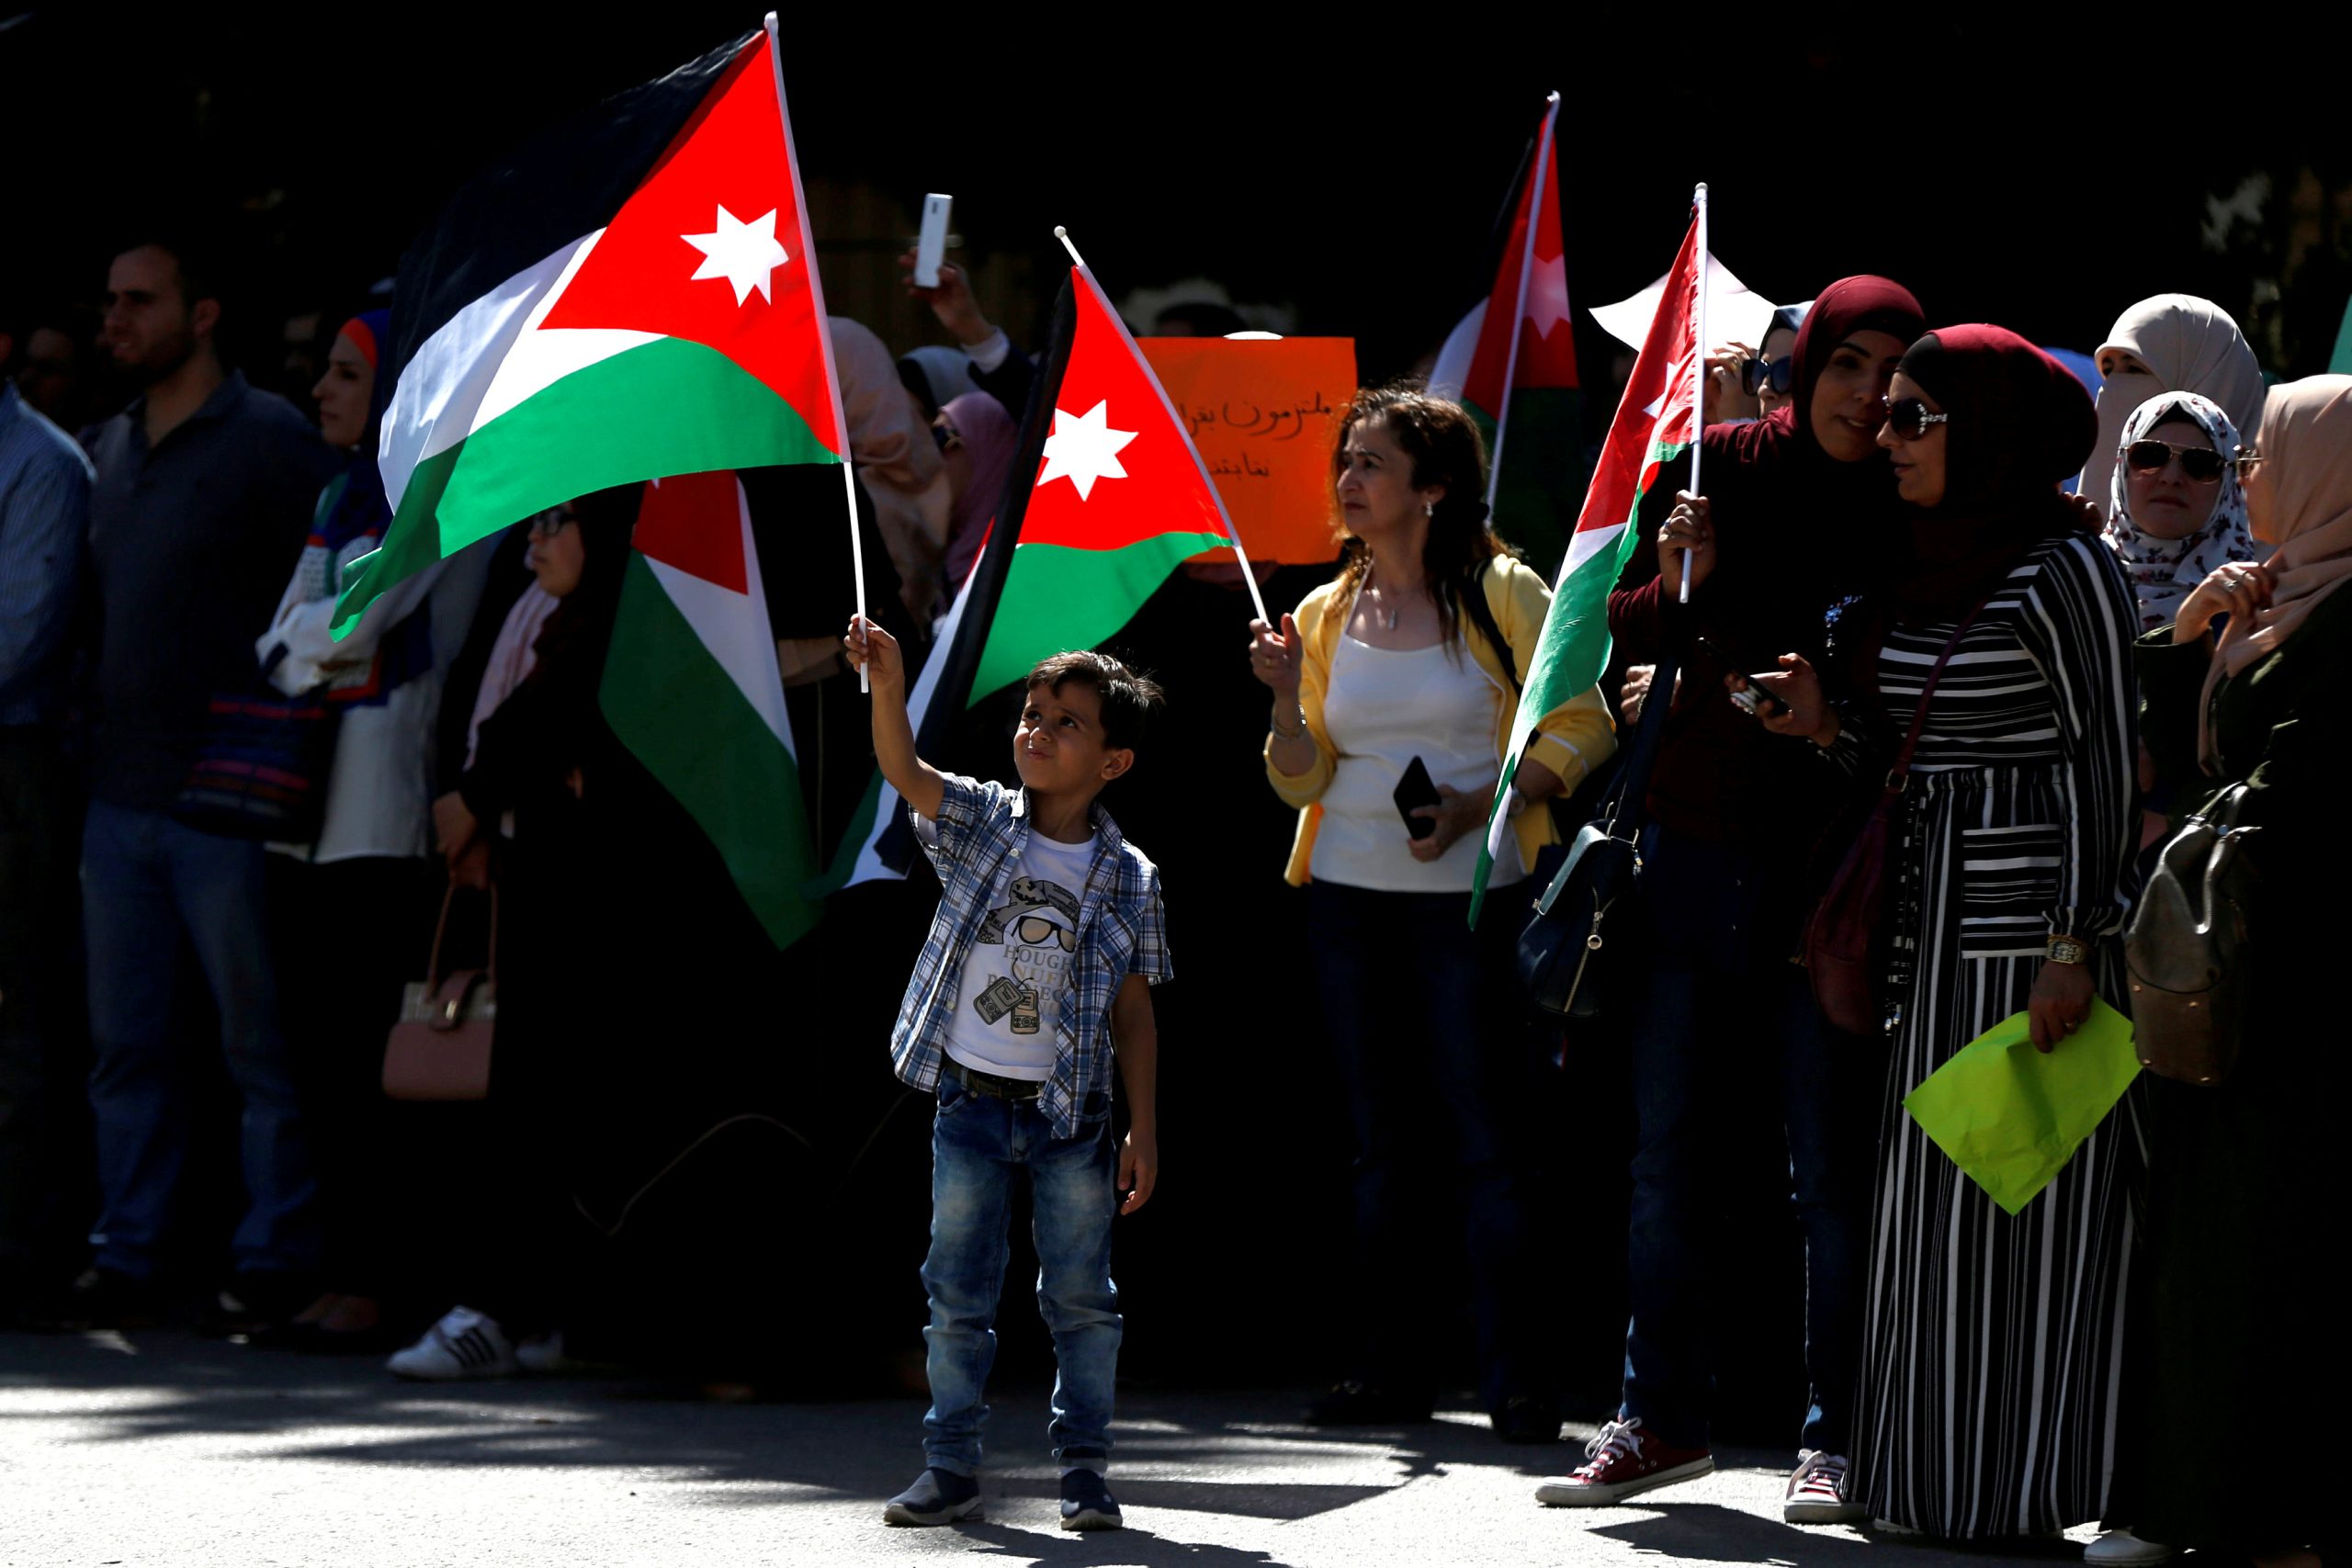 Jordan’s digital crackdowns target media and human rights activists